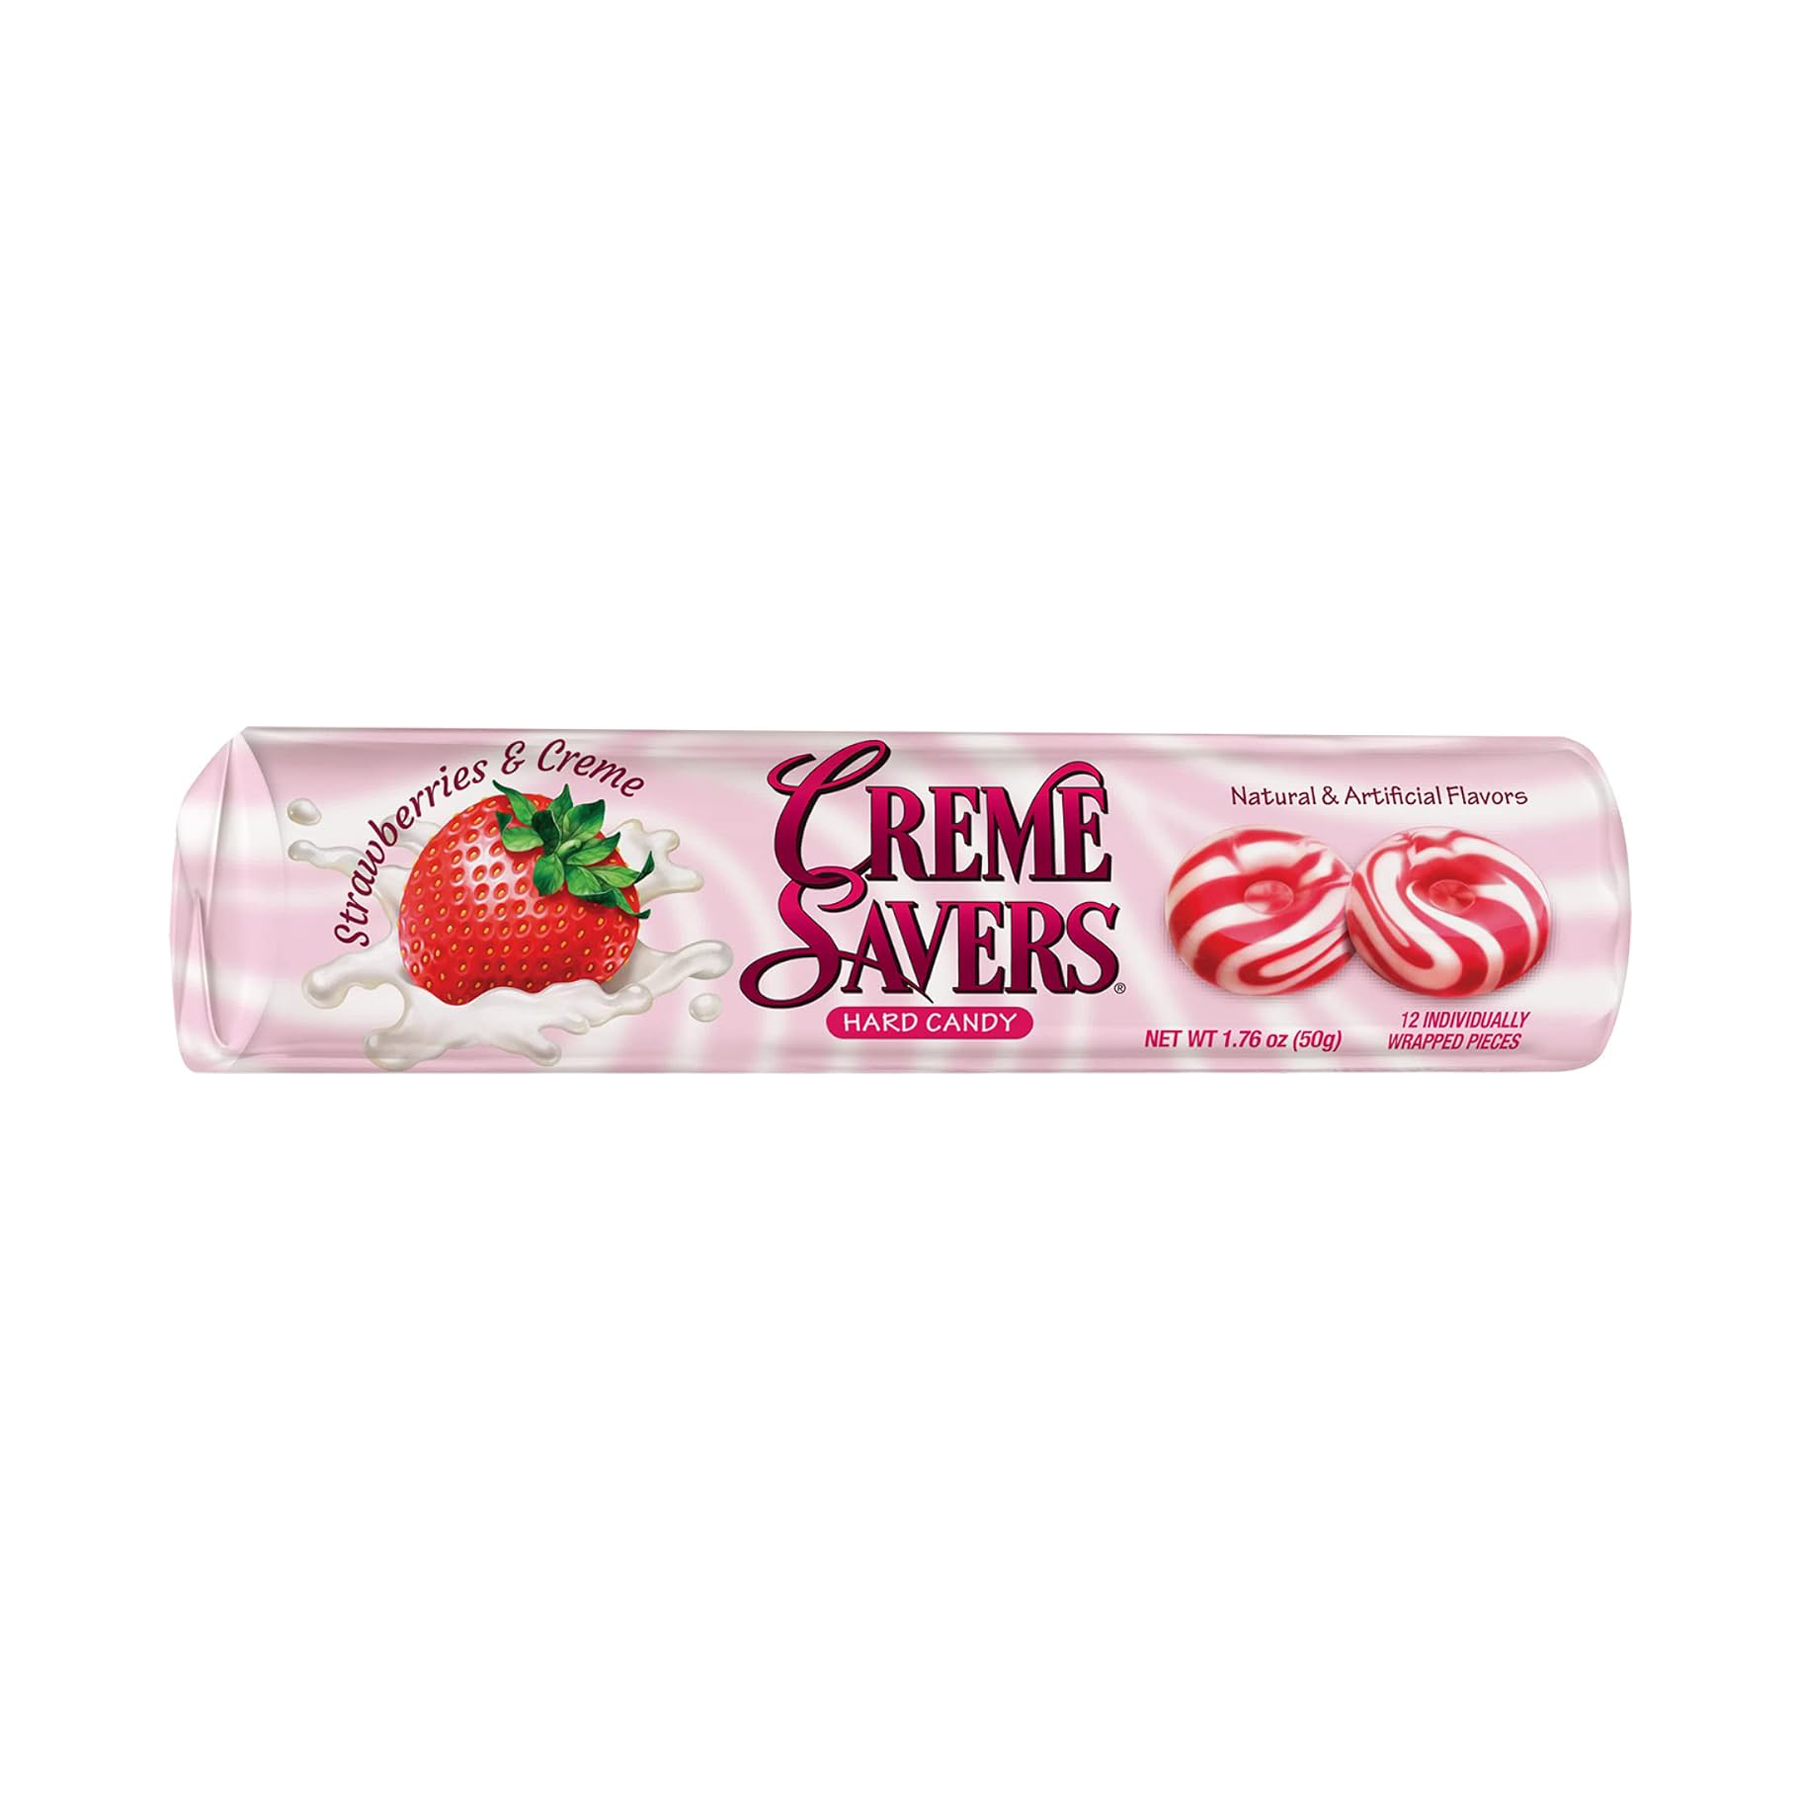 Creme Savers Strawberries & Creme Hard Candy (50g)